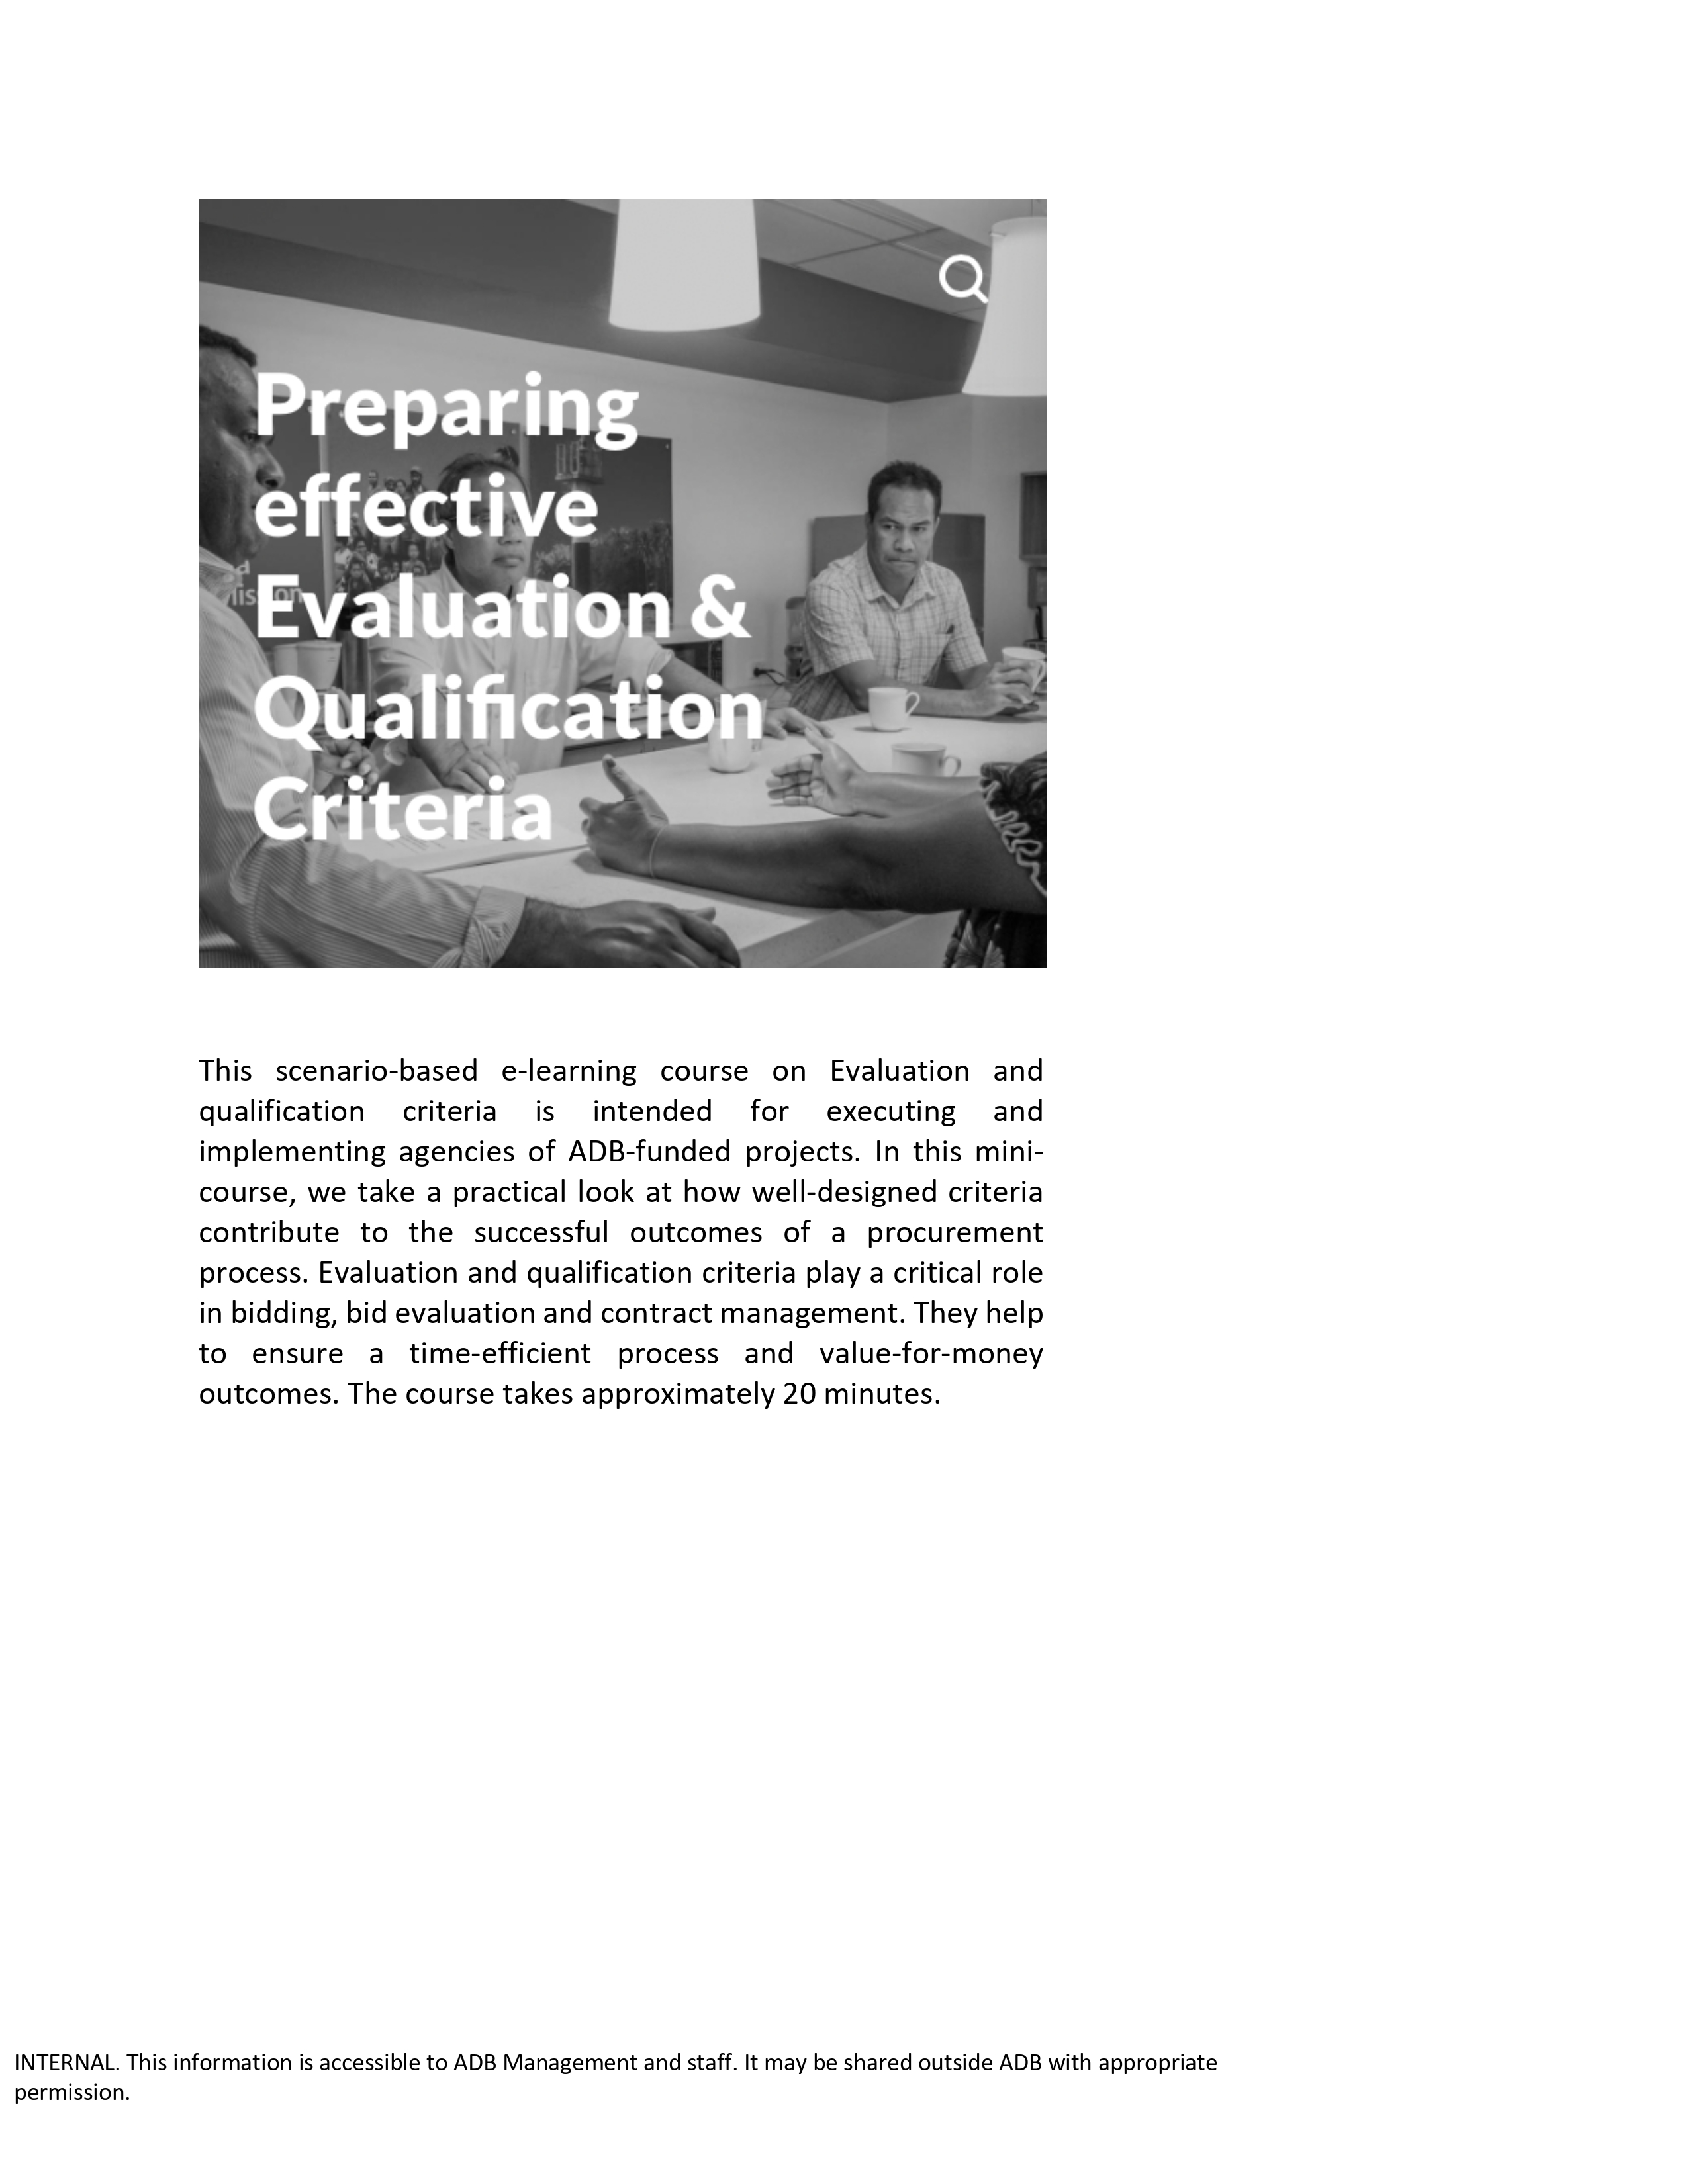 Preparing Effective Evaluation and Qualification Criteria